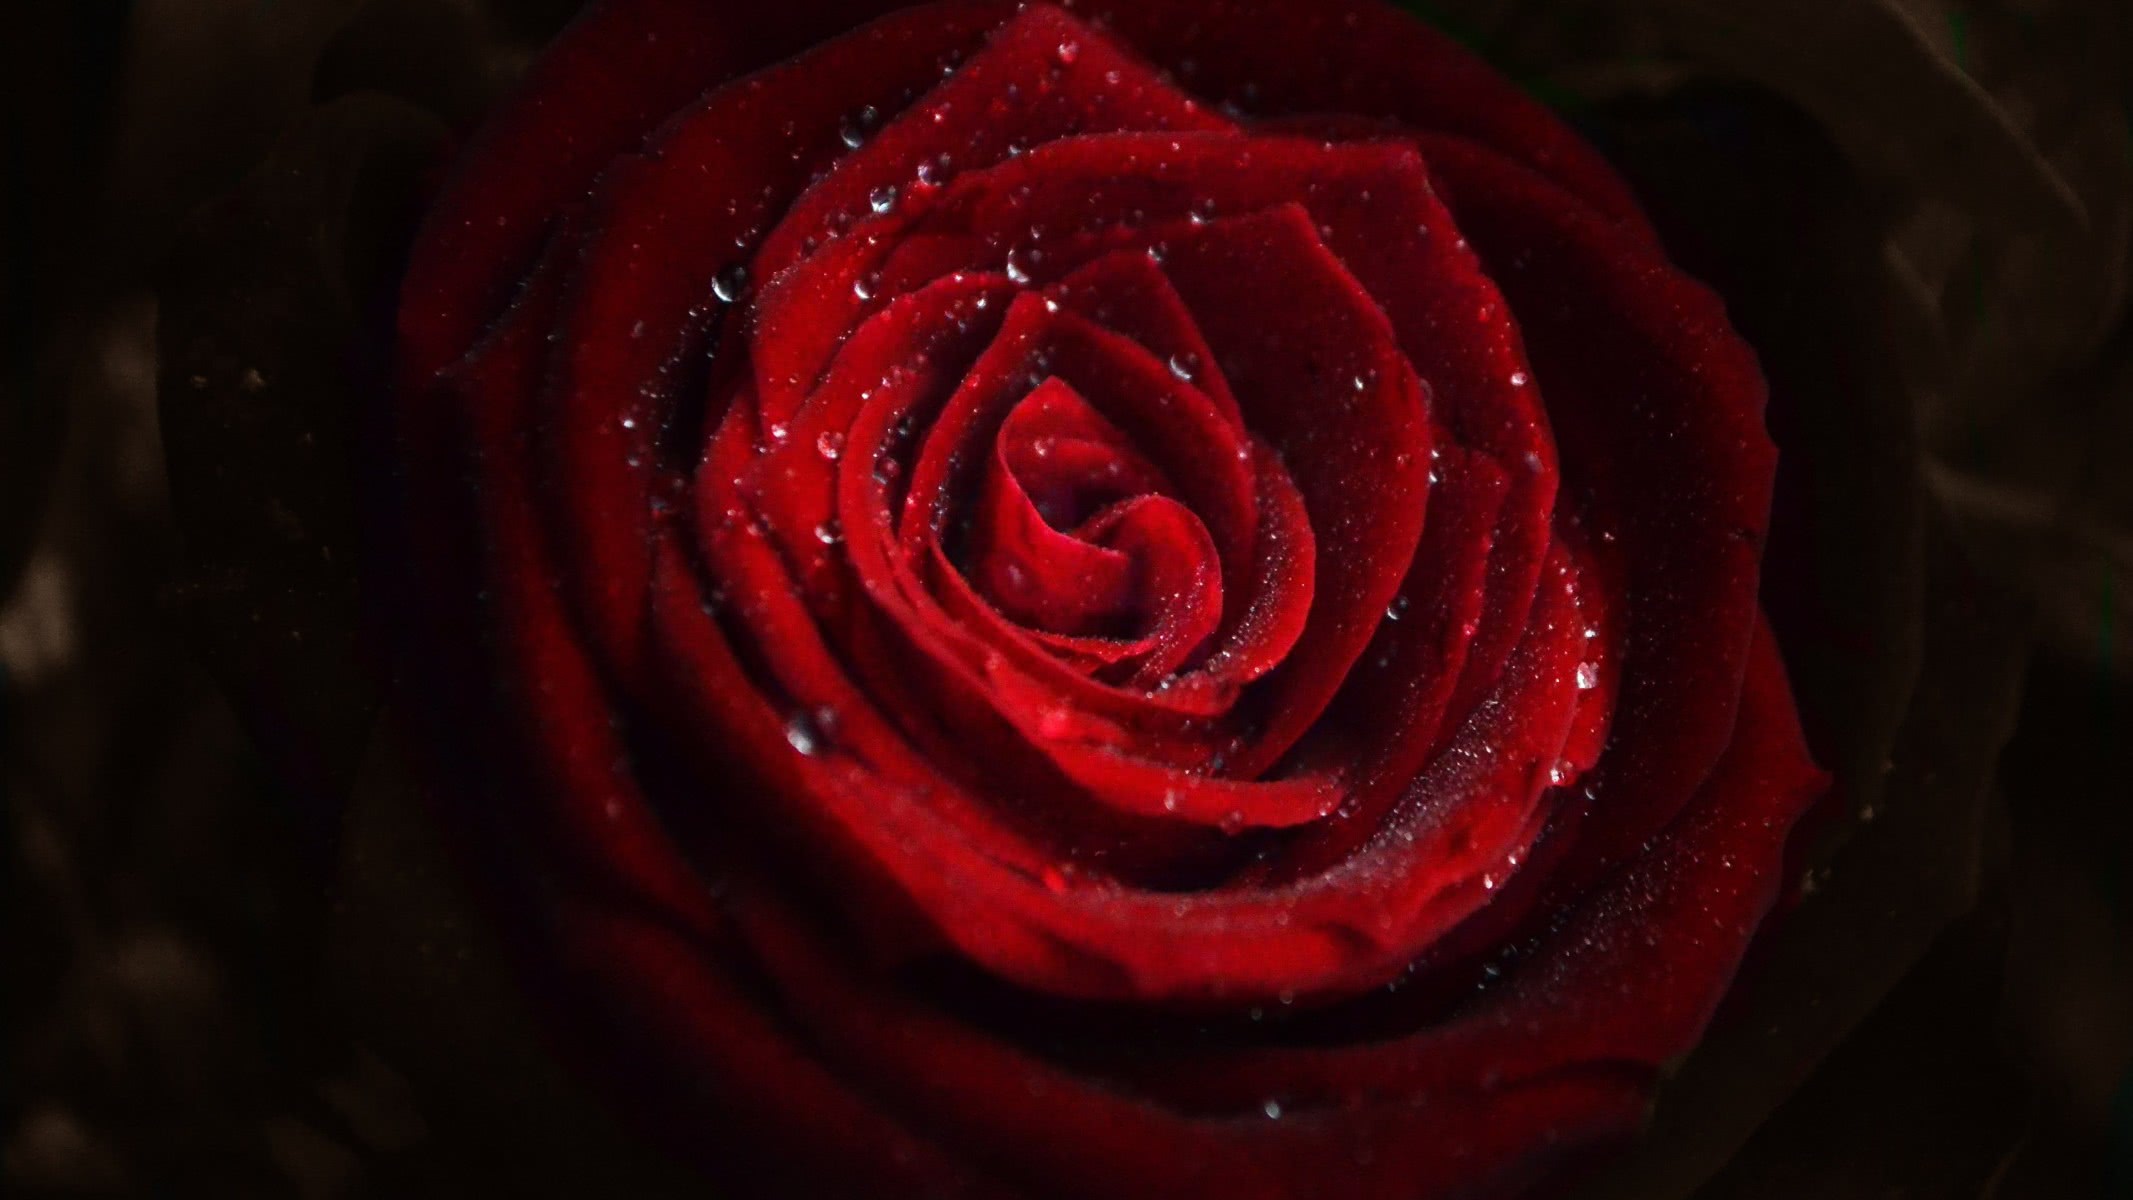 Rose Flower Water Drops - 4k Ultra Hd Wallpaper Rose - HD Wallpaper 